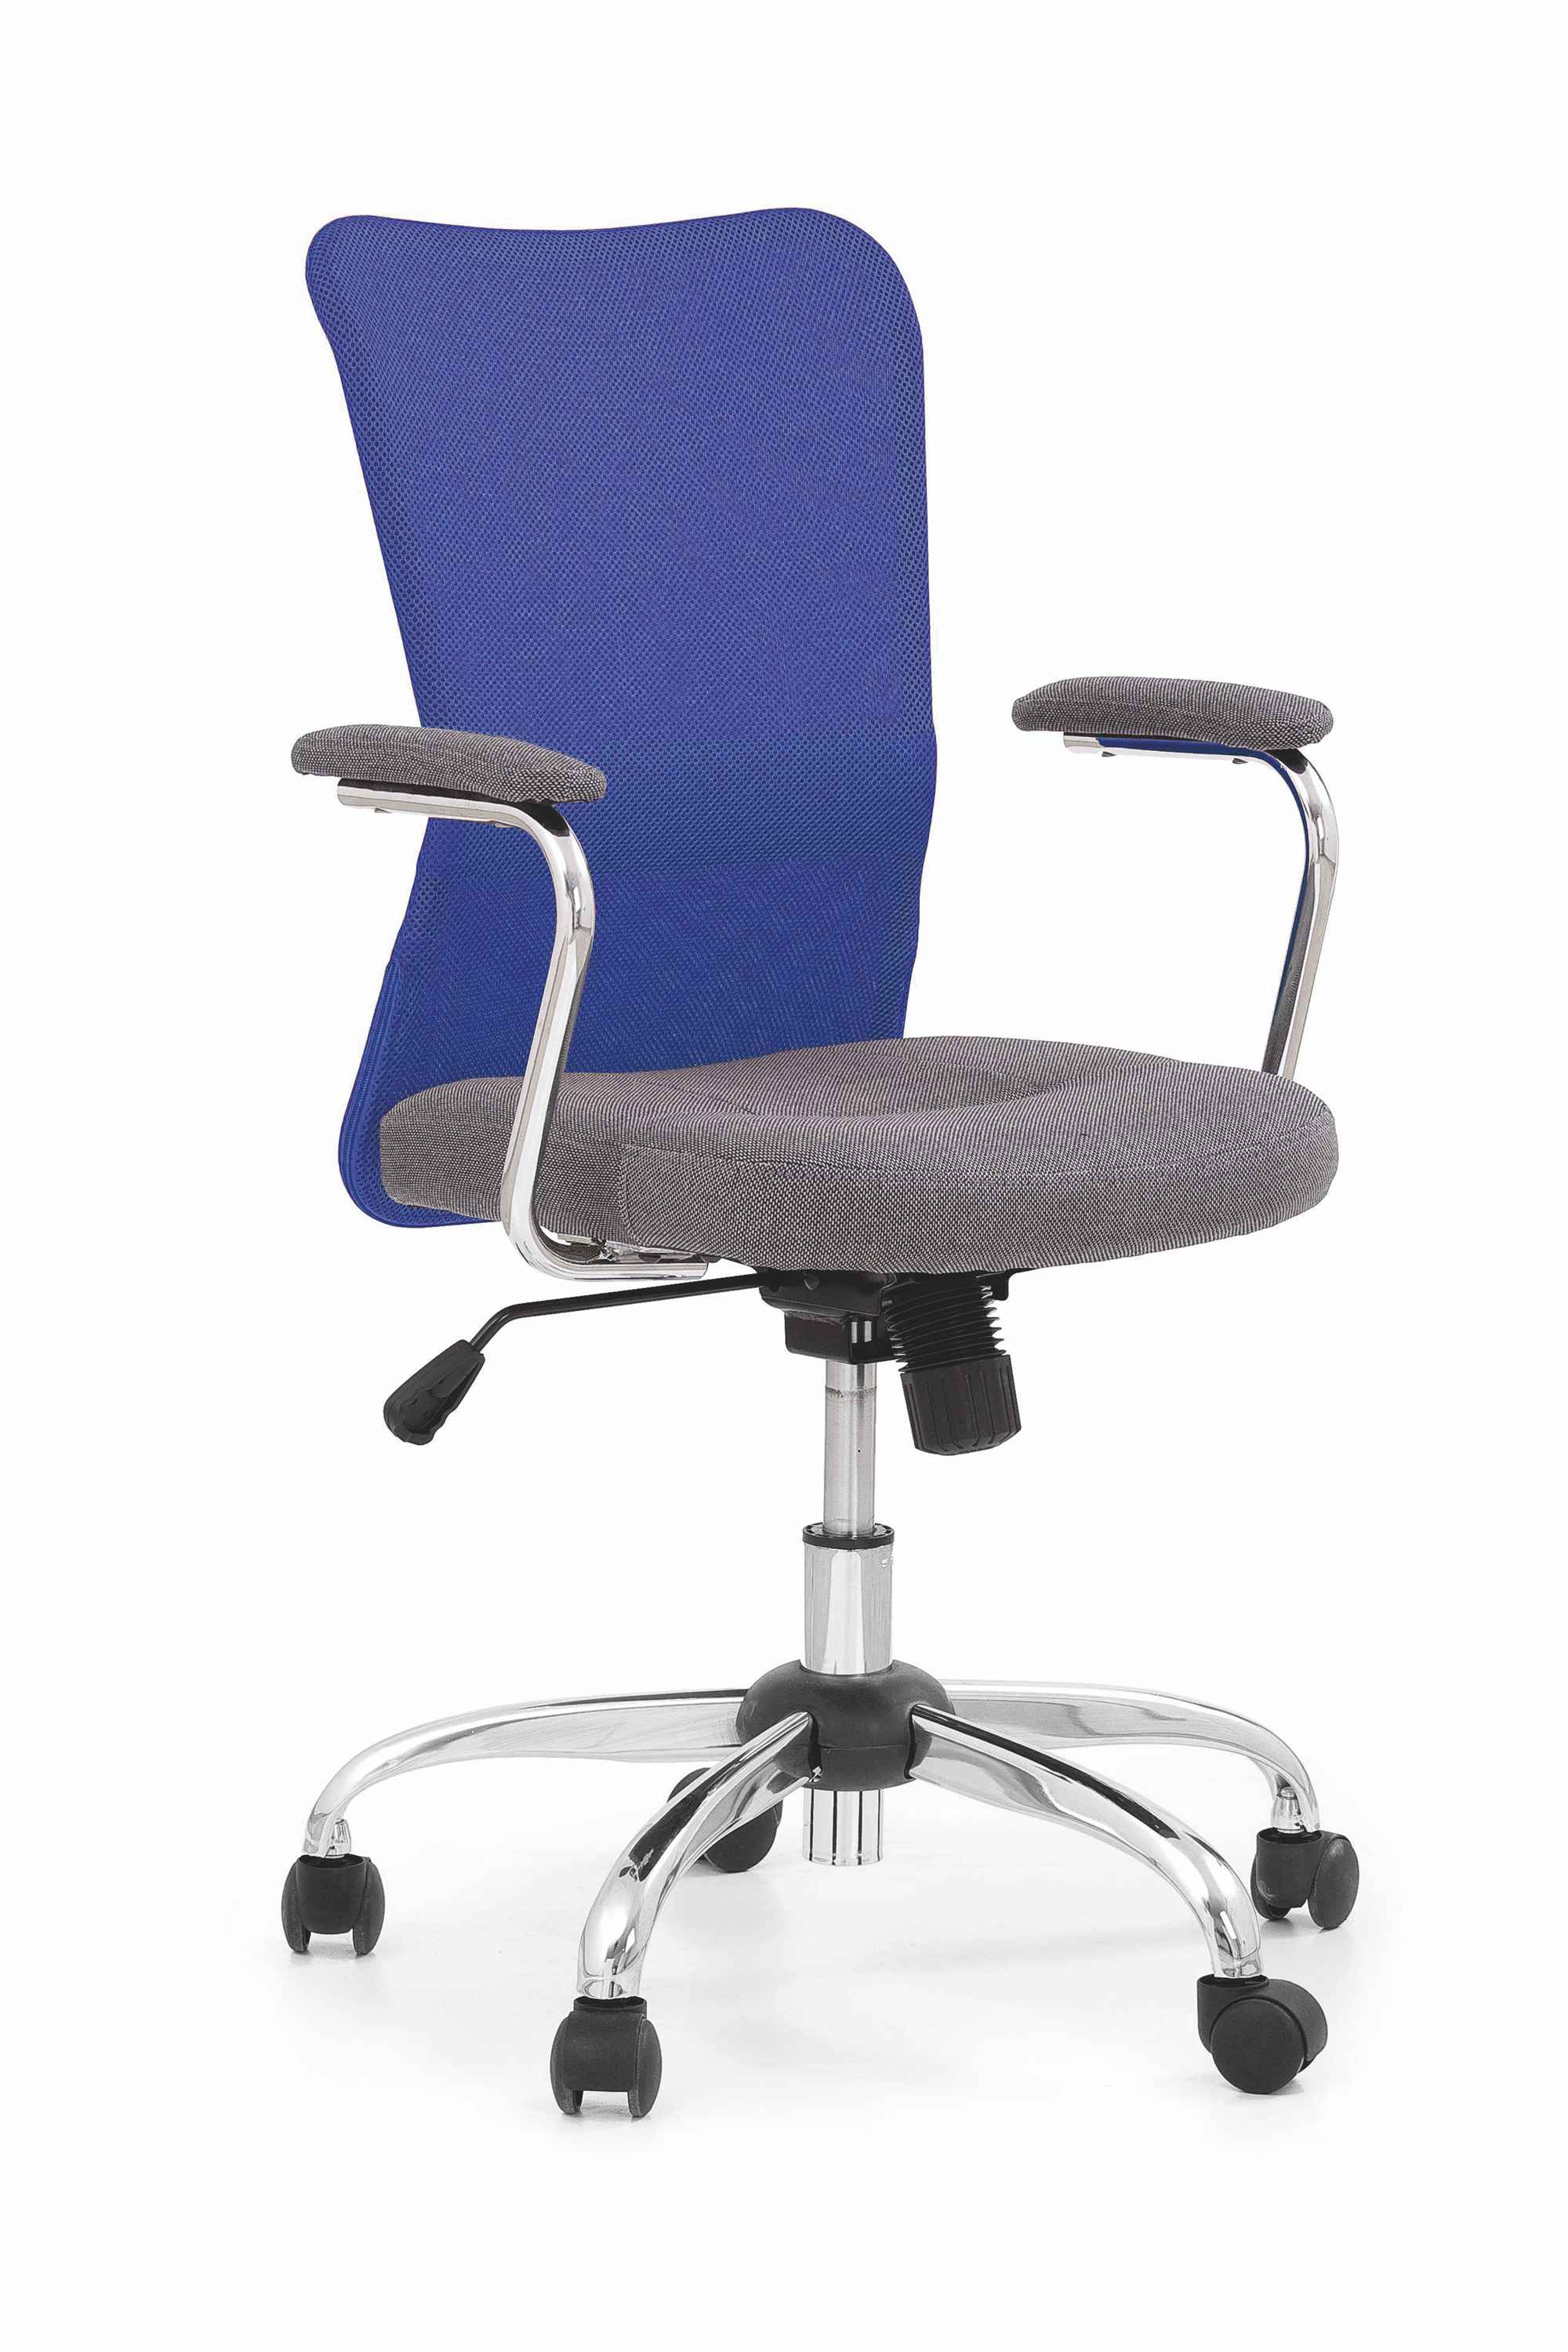 Kancelářská židle ANDY modrá/šedá